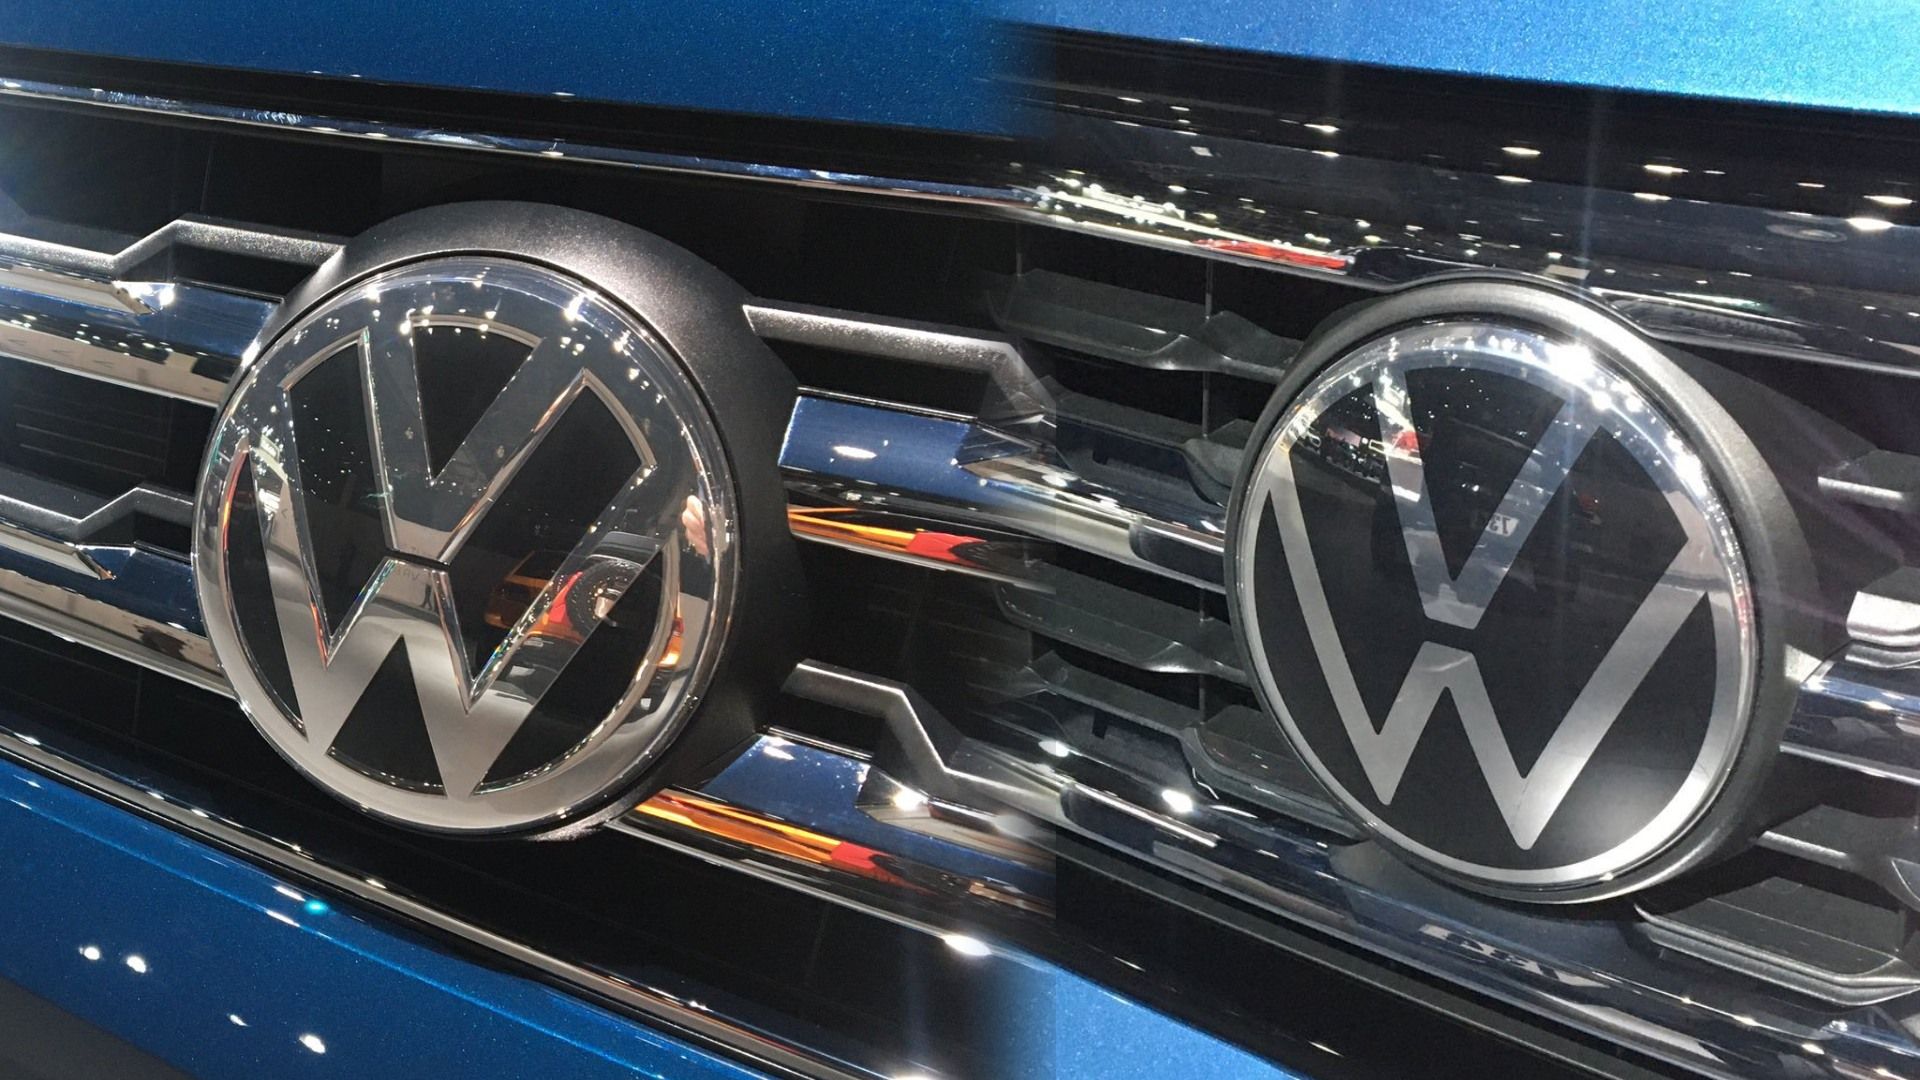 Cómo luce el nuevo logo de Volkswagen en sus autos?